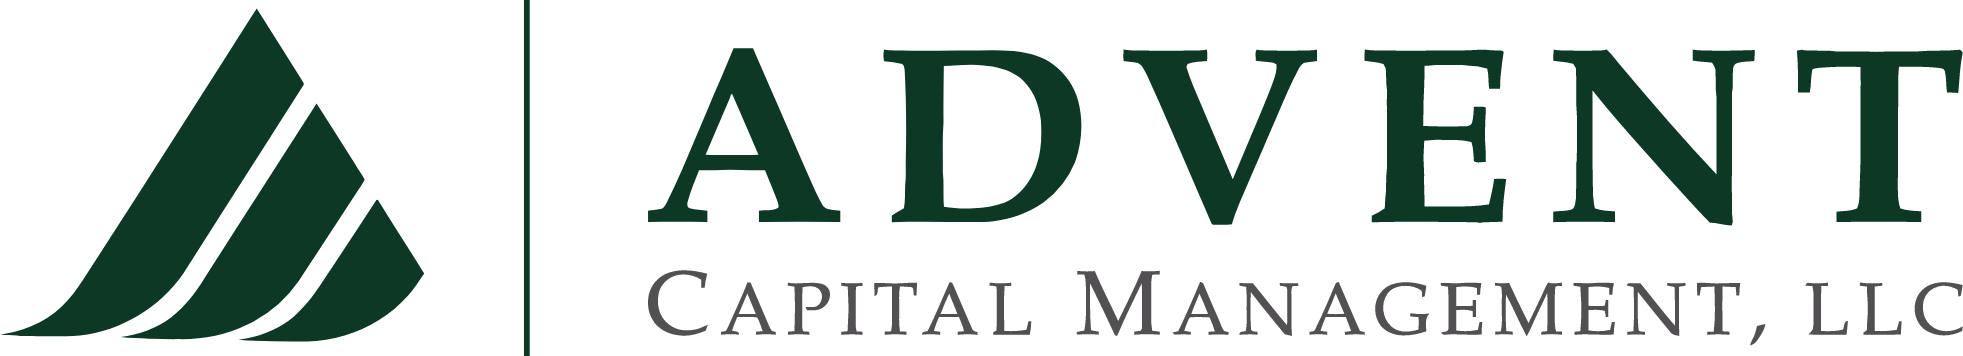 Advent Capital Management reviews